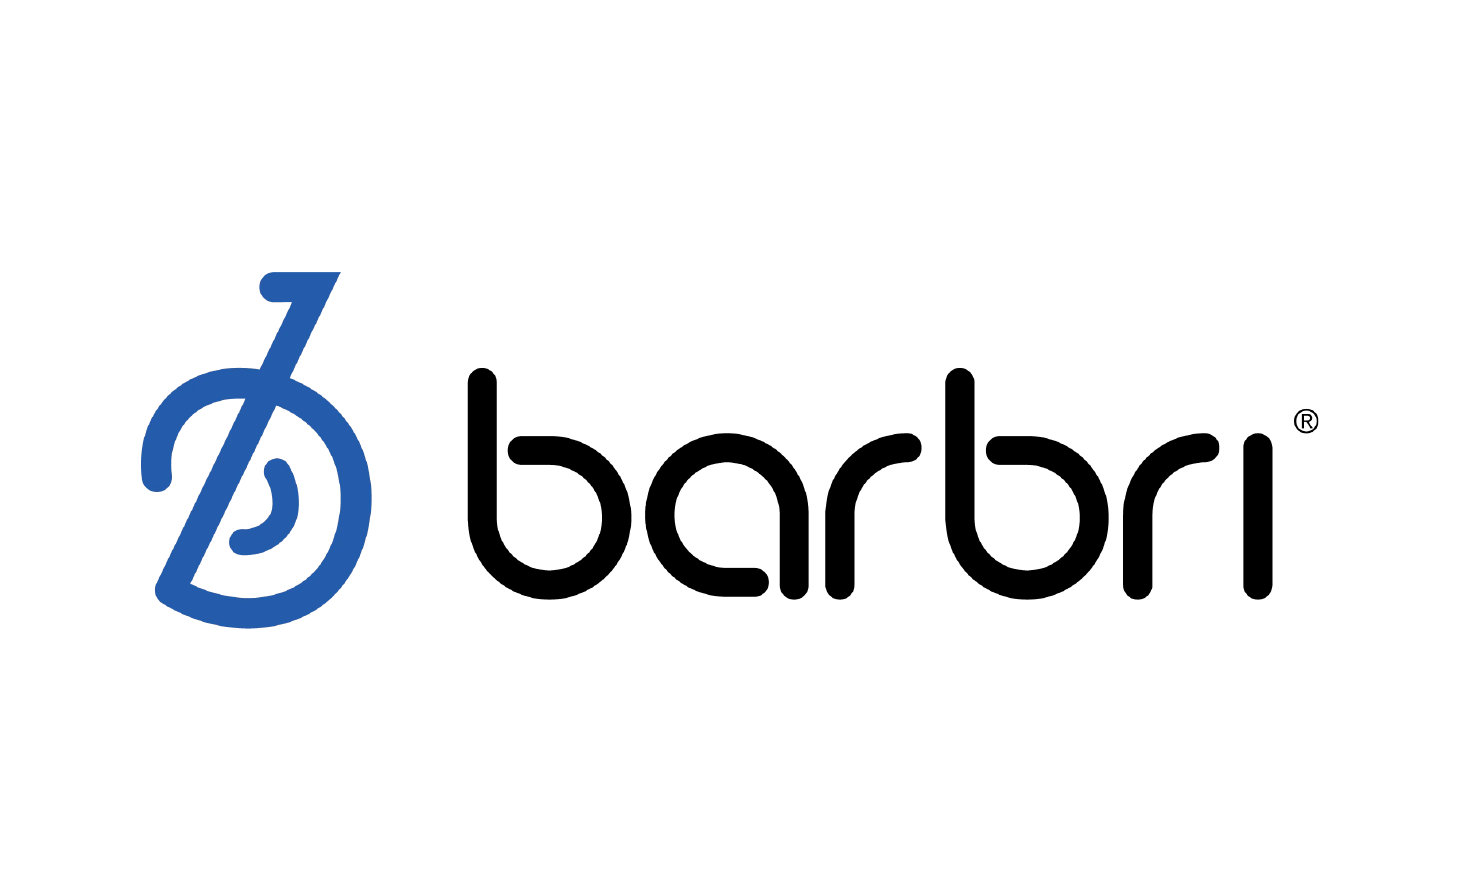 BARBRI Global